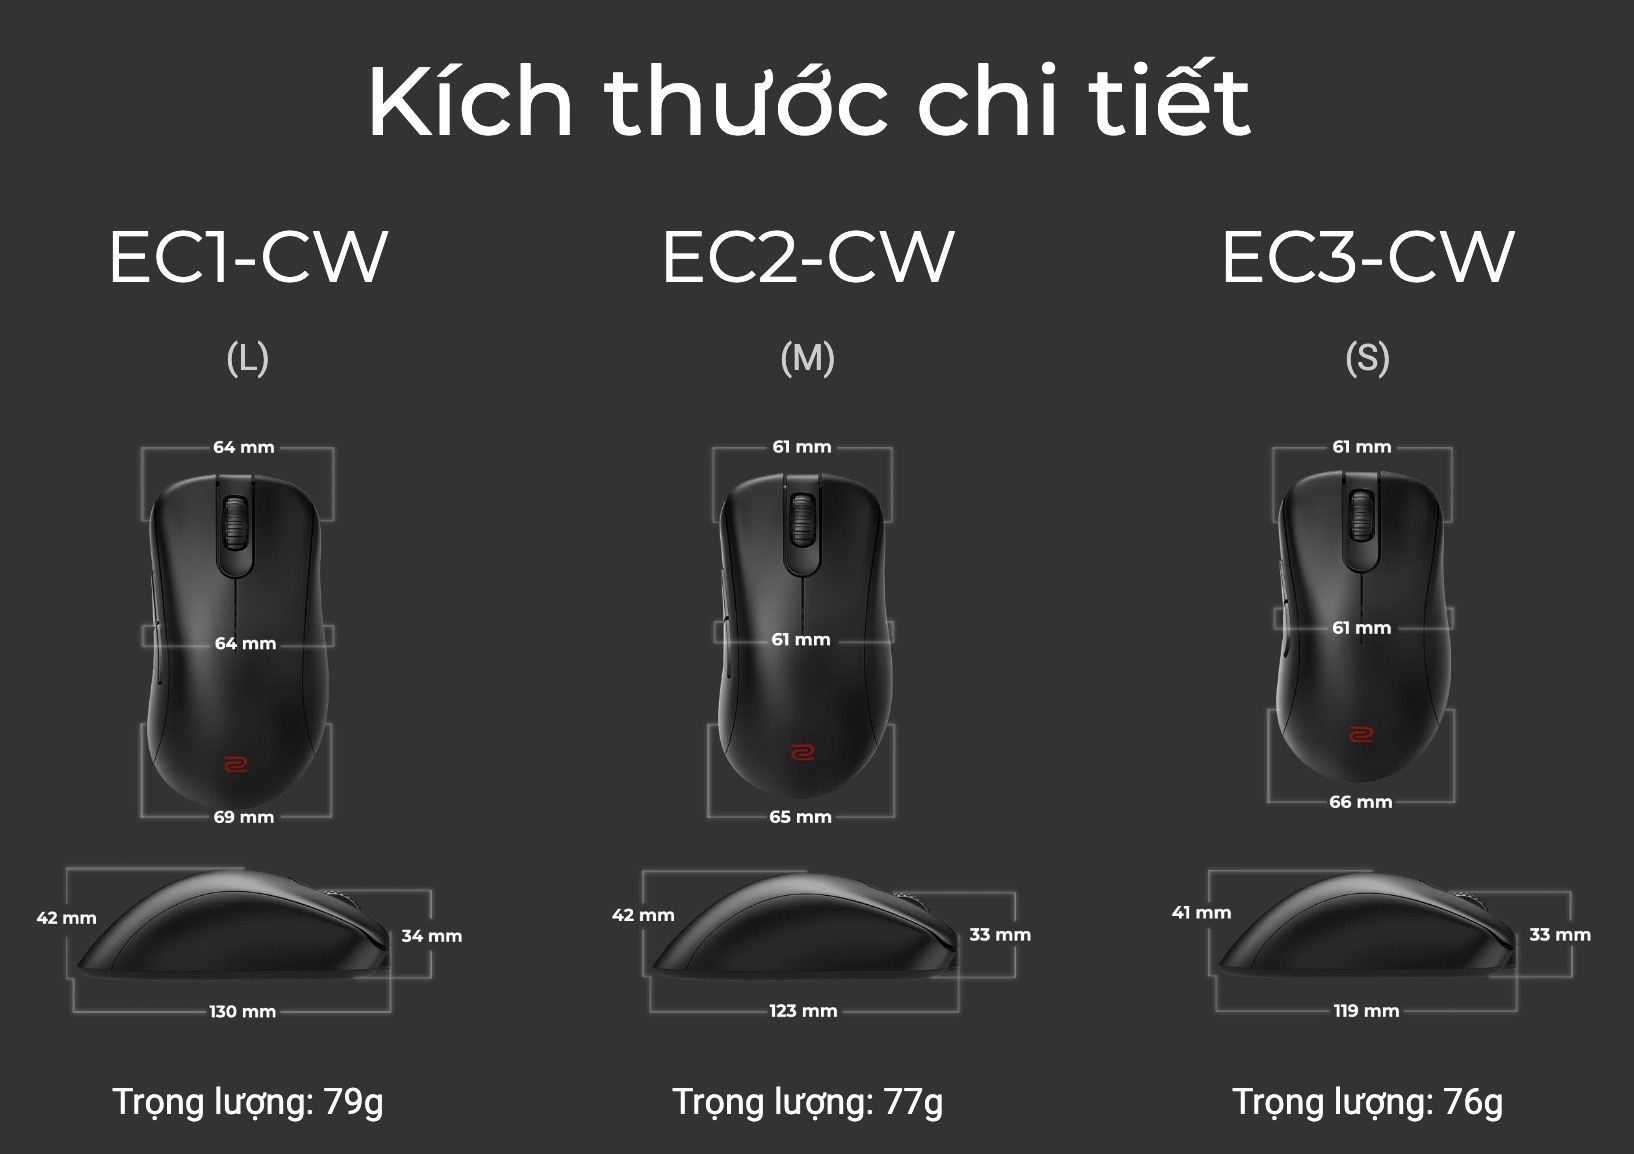 Trên tay chuột không dây cao cấp Zowie EC2-CW: Thiết kế công thái học, có cả sạc không dây, giá 3,99 triệu đồng - Ảnh 7.